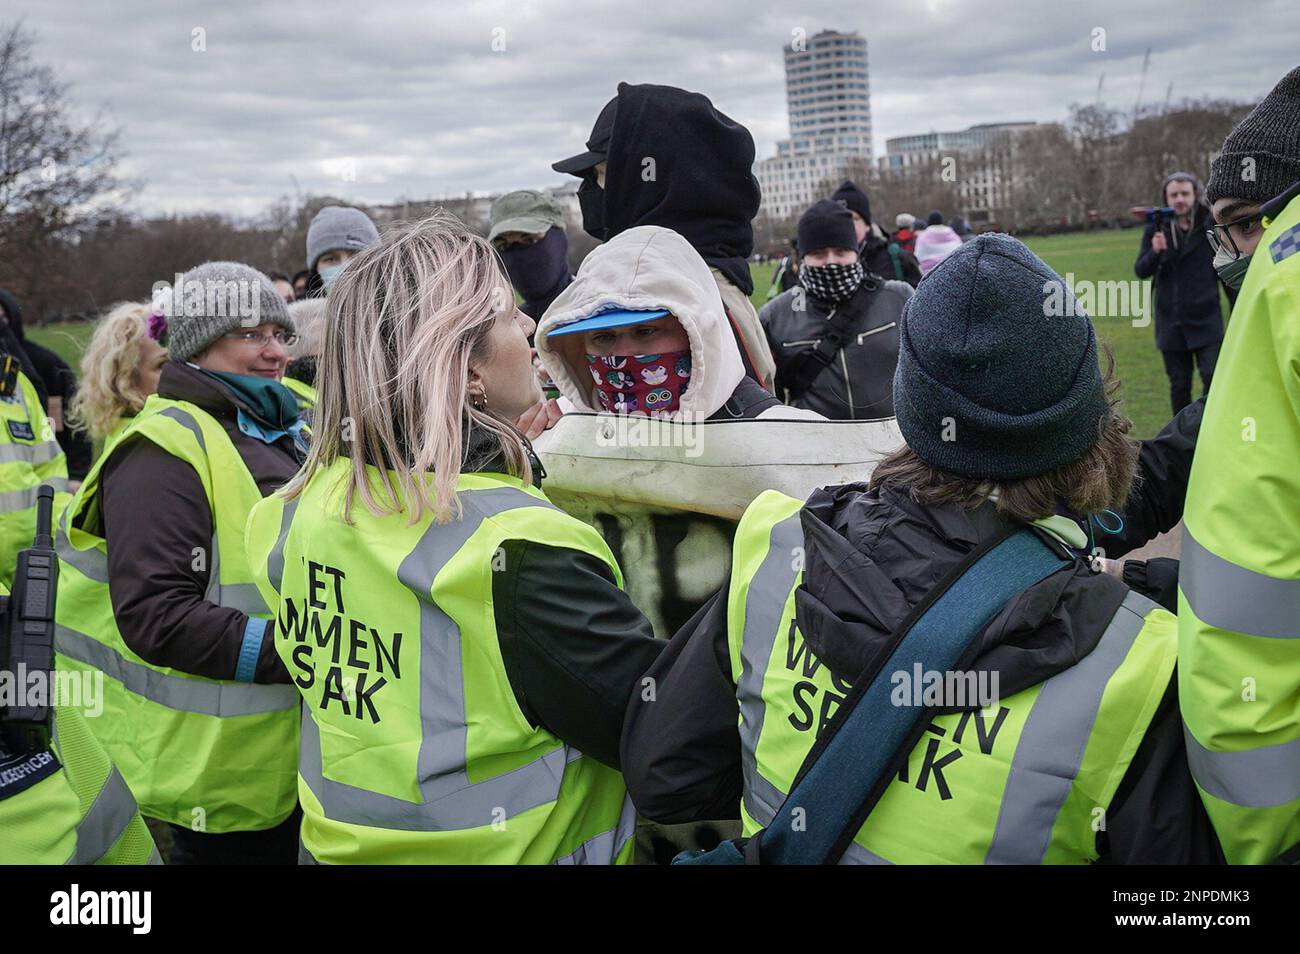 Les militants des droits transgenres protestent contre les féministes de Standing for Women près de The Reformerss' Tree à Hyde Park, Londres, Royaume-Uni. Banque D'Images